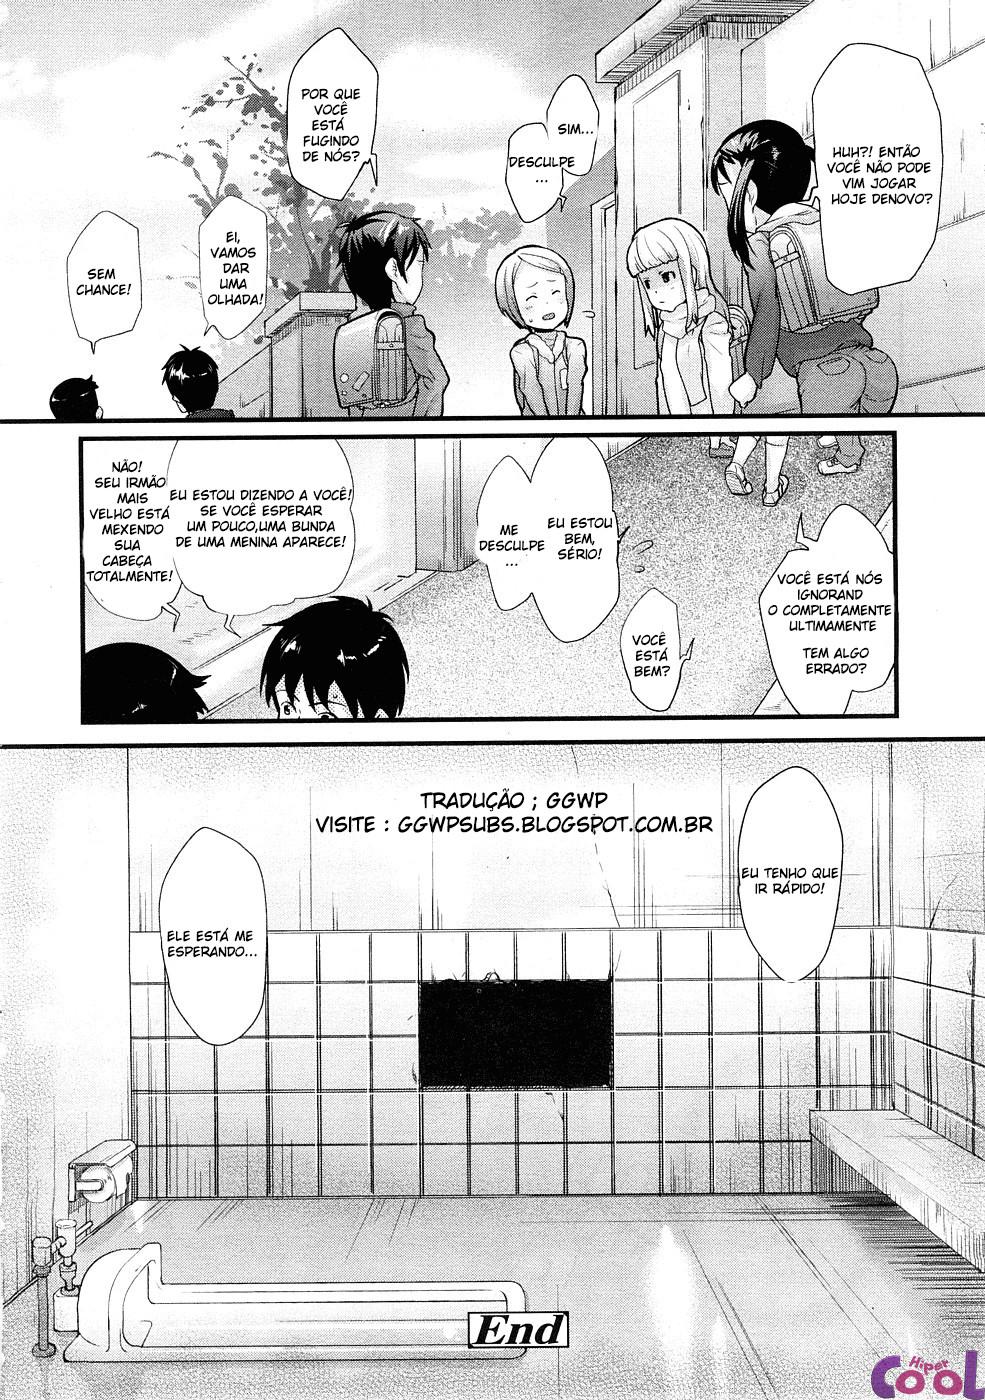 ana-no-toriko-chapter-01-page-16.jpg